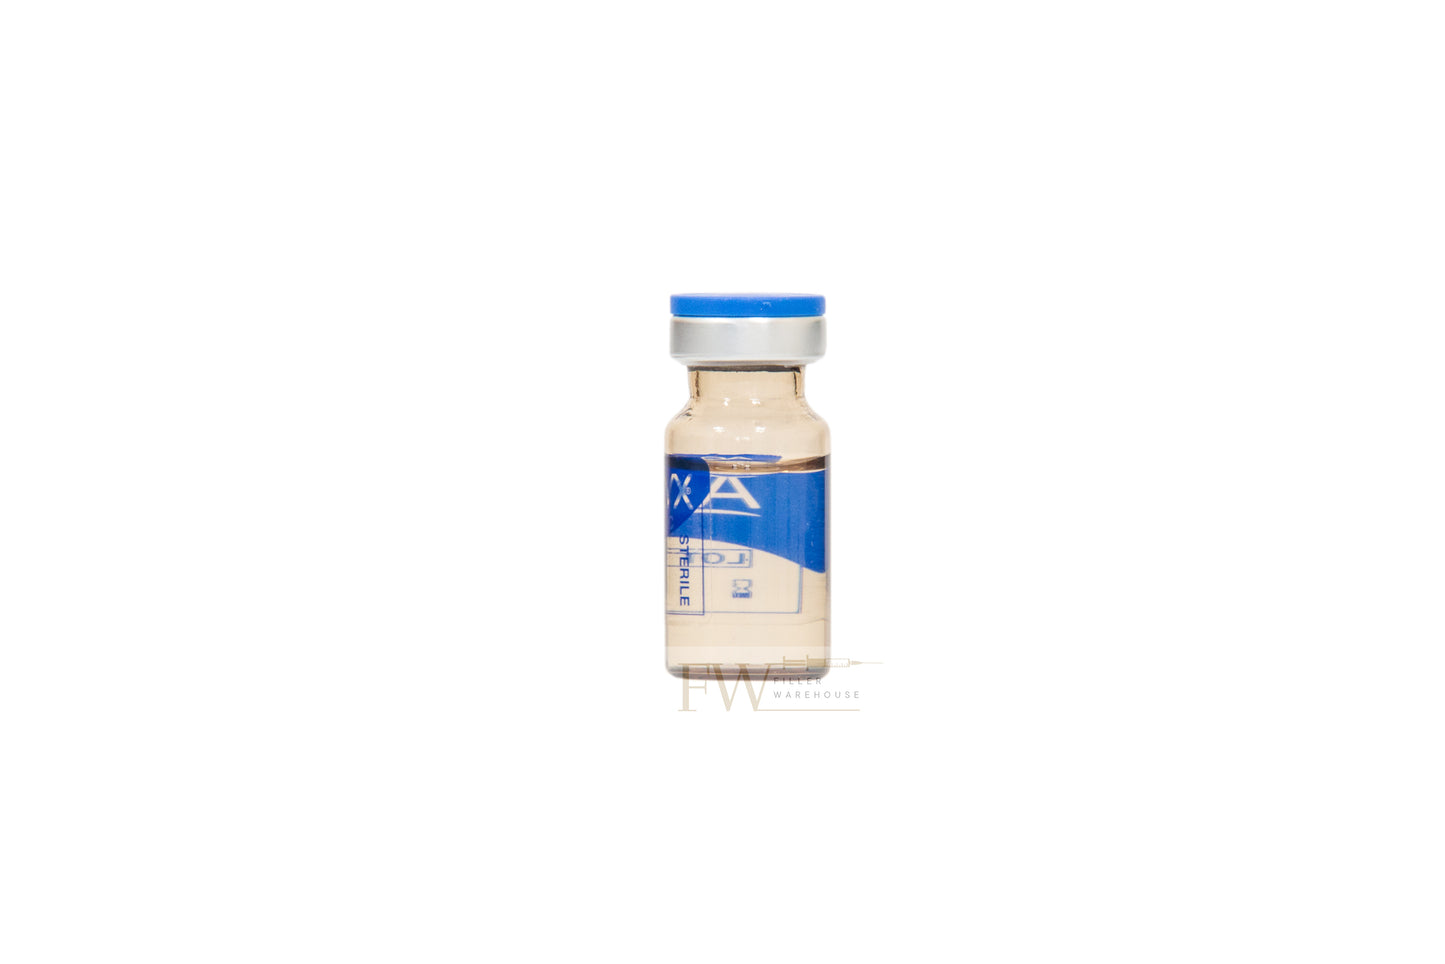 Aqualyx Fat Dissolve - 5 Vials x 8ml